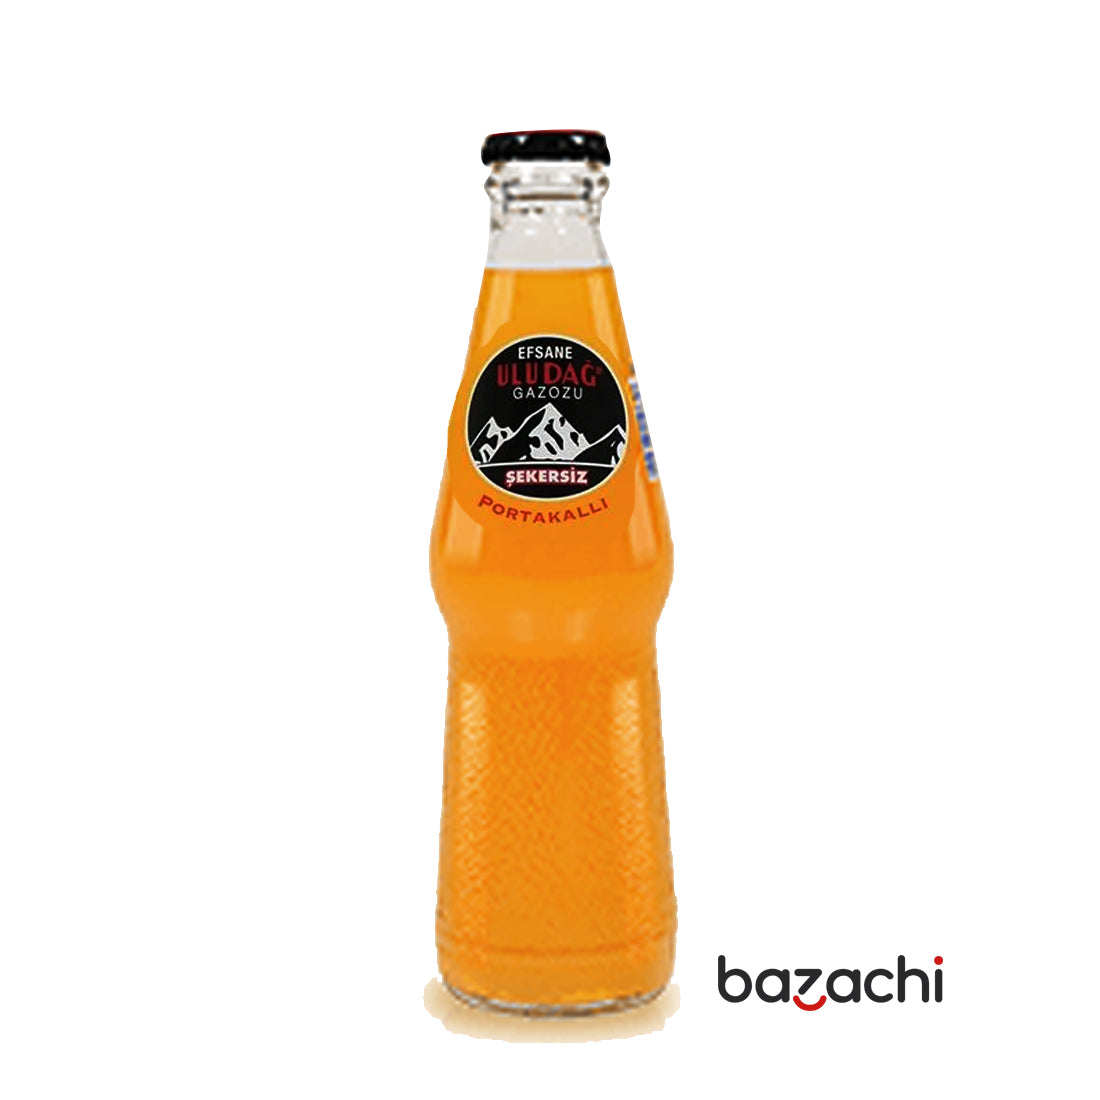 Uludağ Orange Sugar Free Soda Drink 250ml